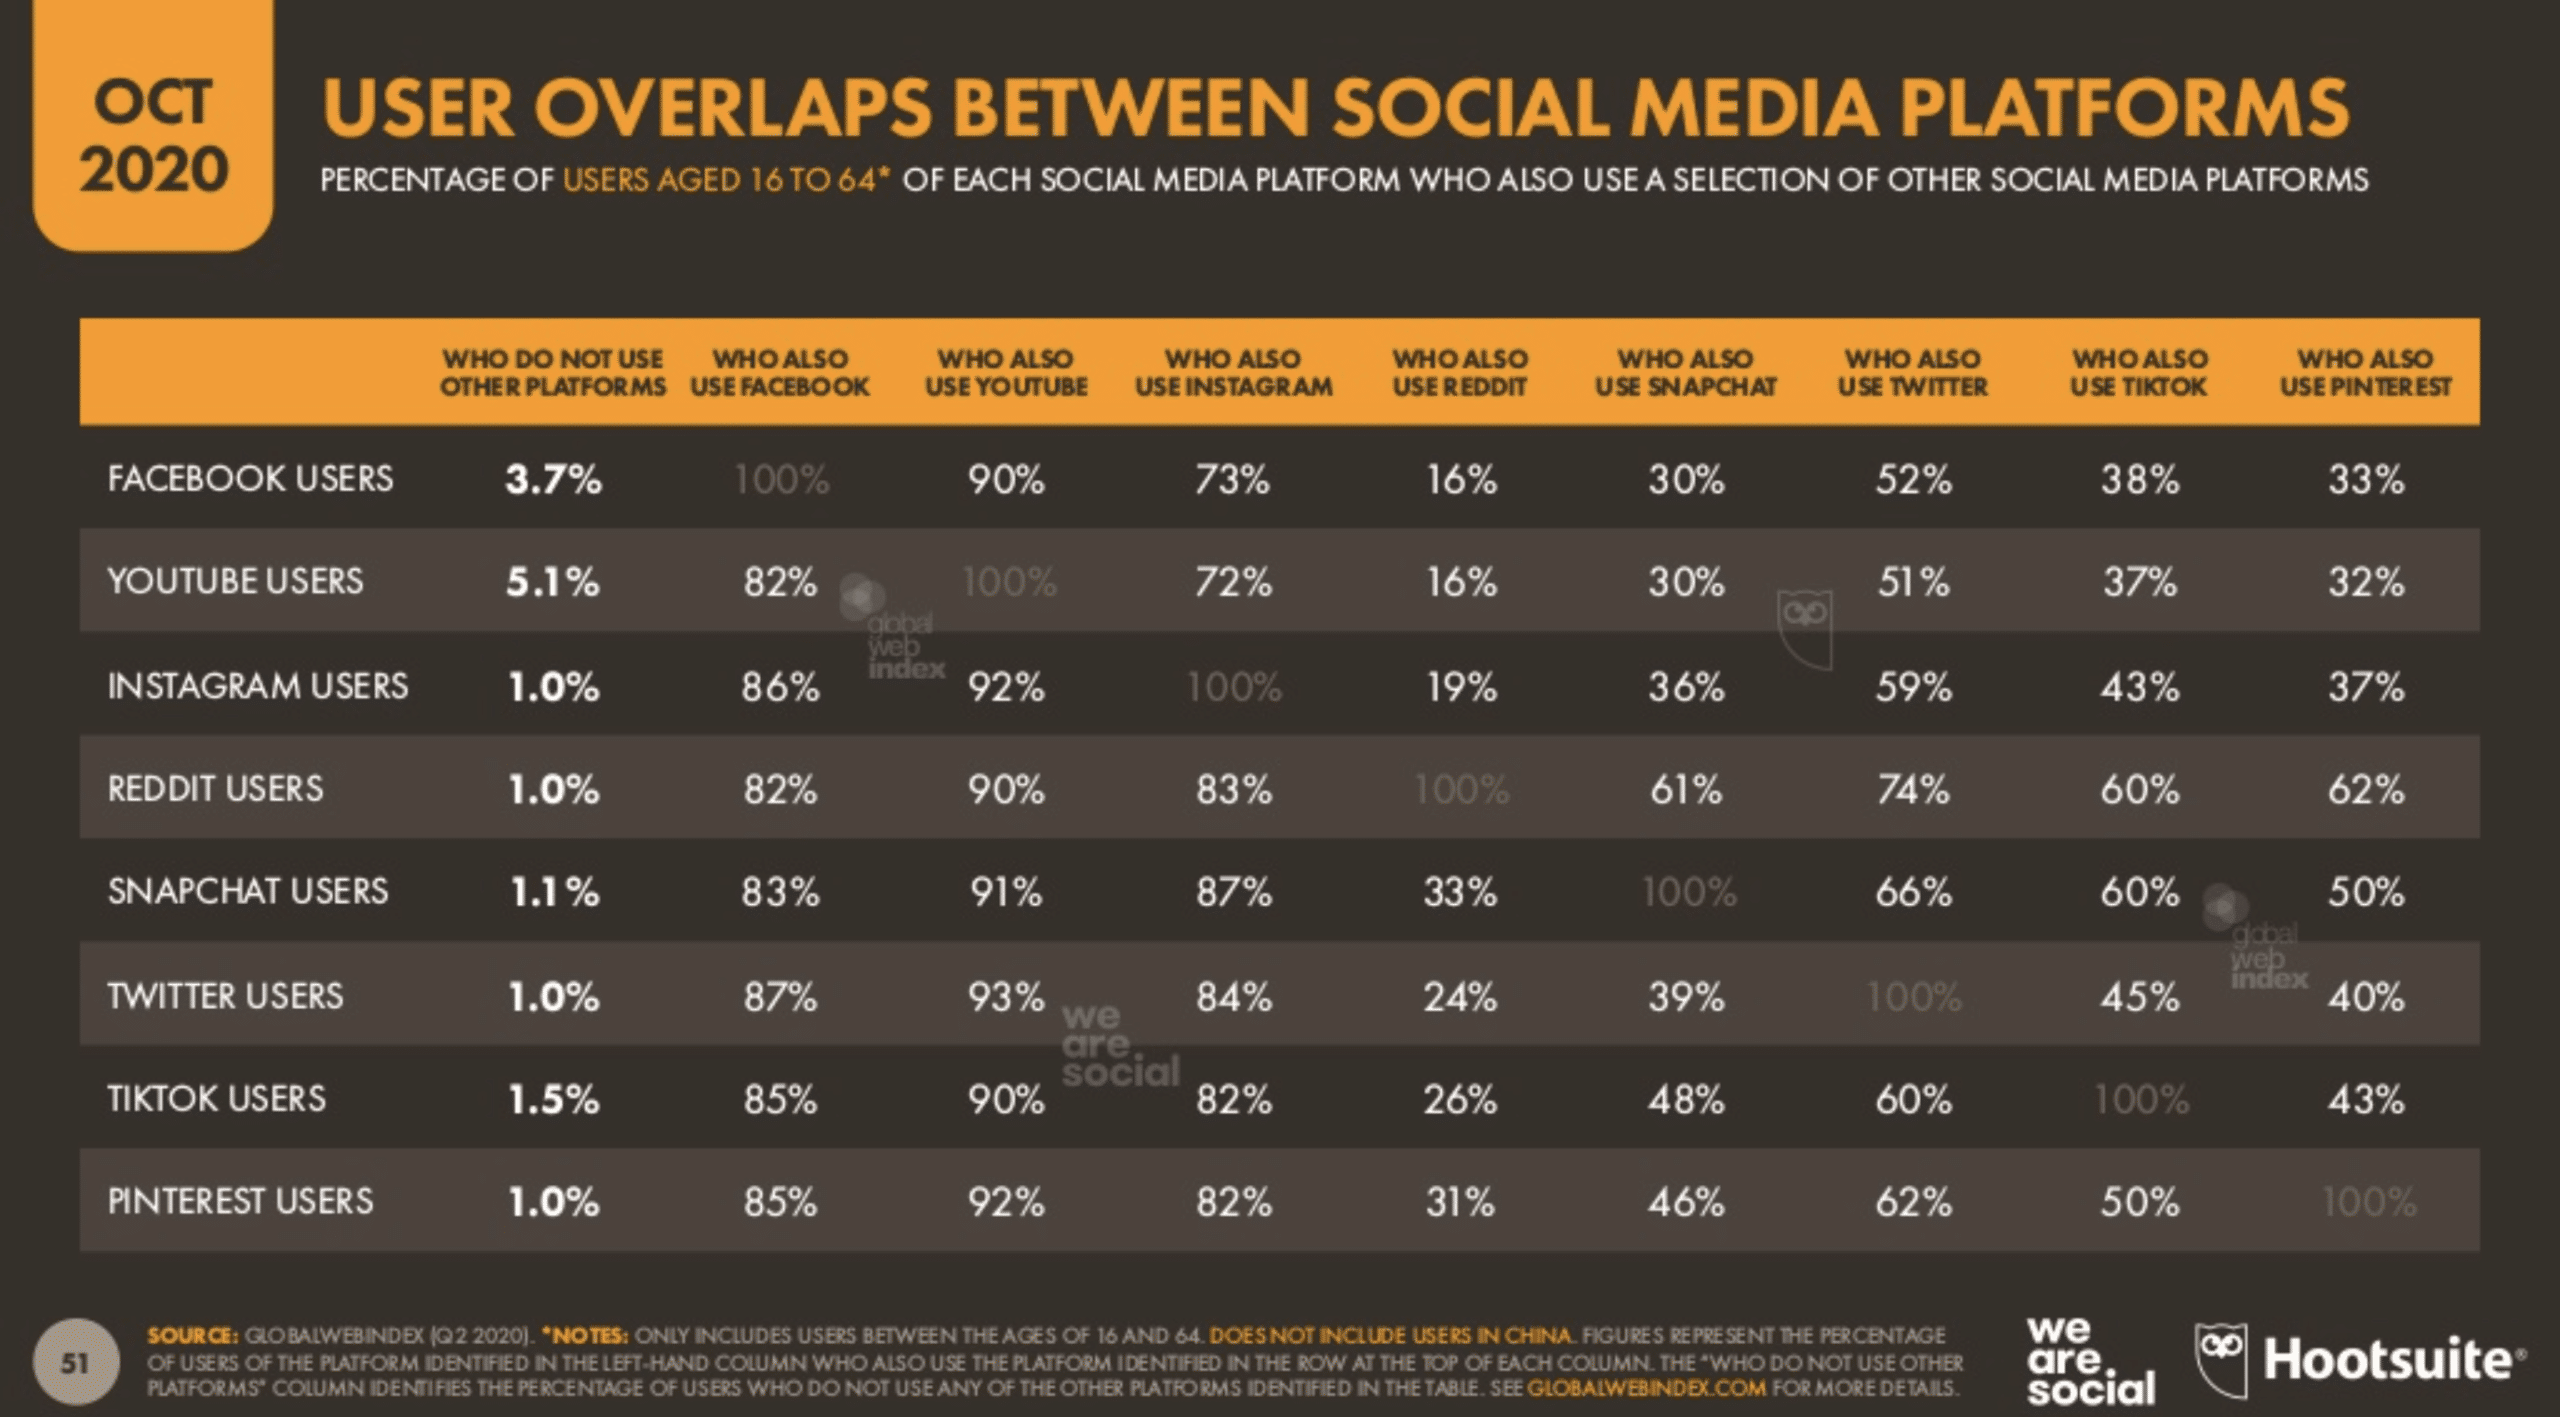 User overlaps between social media platforms